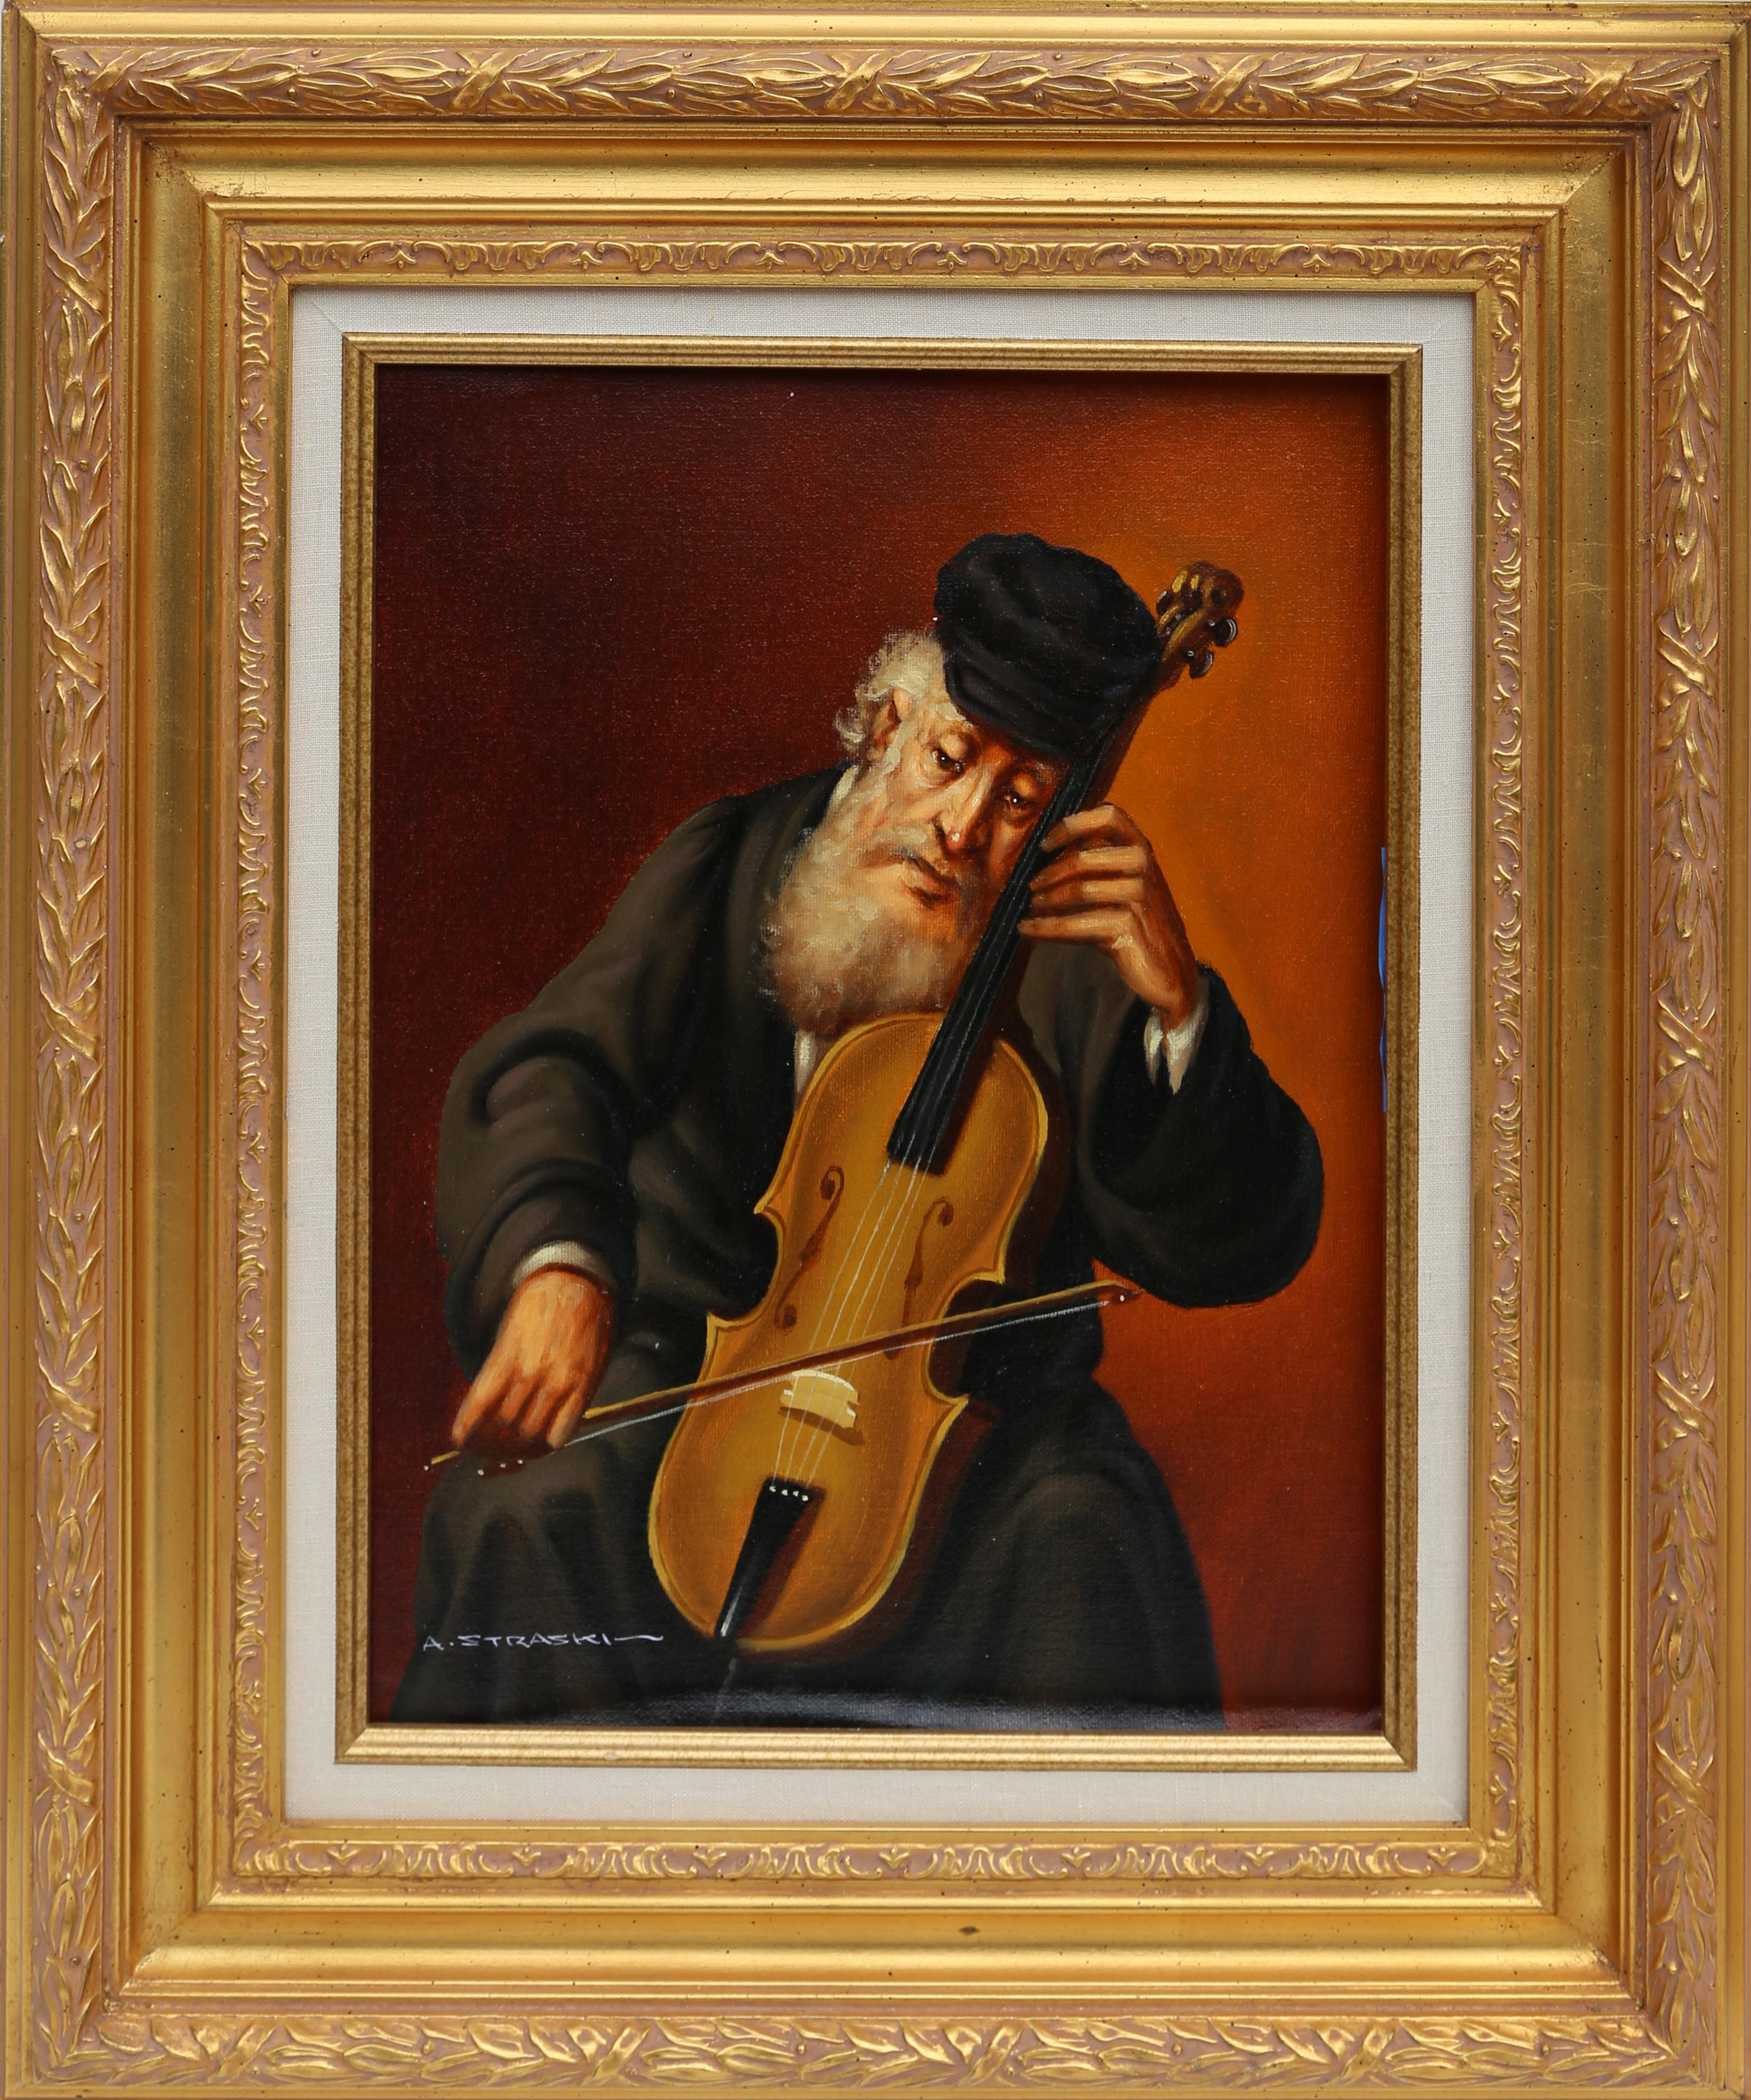 Jüdischer Mann, der Geige spielt (3-F)
Abraham Straski, Pole (1903-1987)
Datum: 1952
Öl auf Leinwand, signiert und datiert
Größe: 16 x 11,5 Zoll (40,64 x 29,21 cm)
Rahmengröße: 24 x 19,5 Zoll